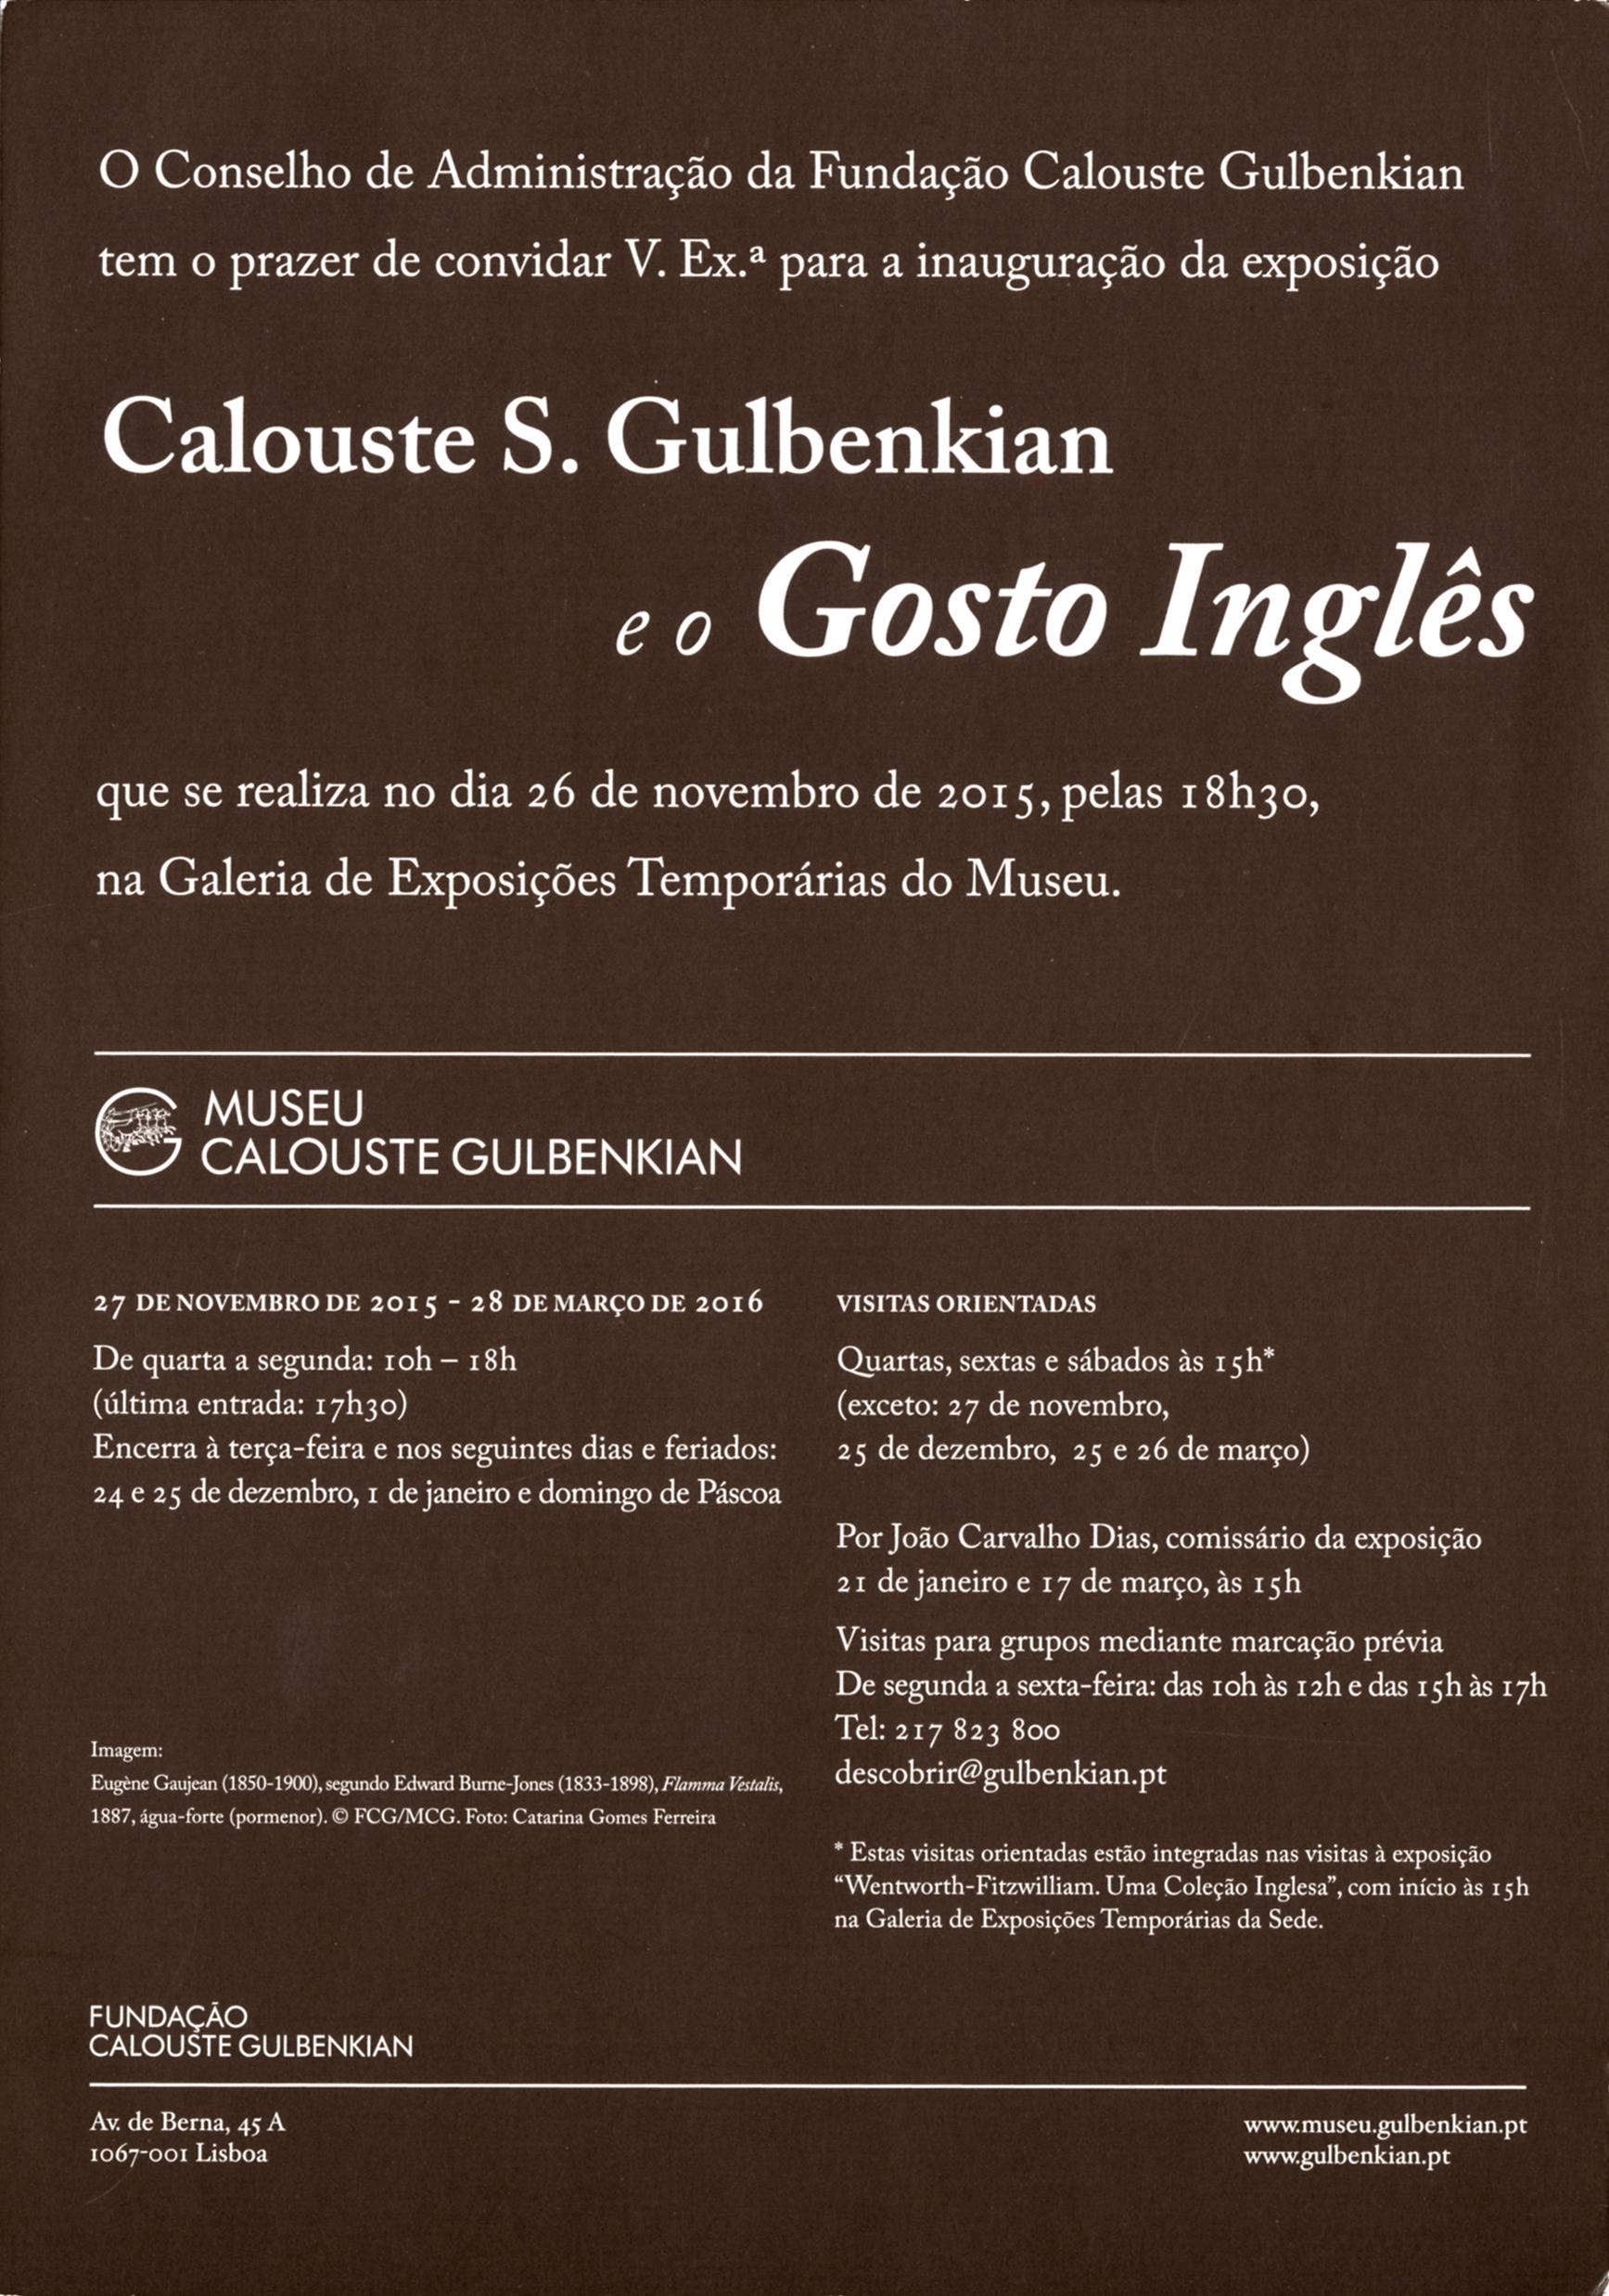 Calouste S. Gulbenkian e o Gosto Inglês